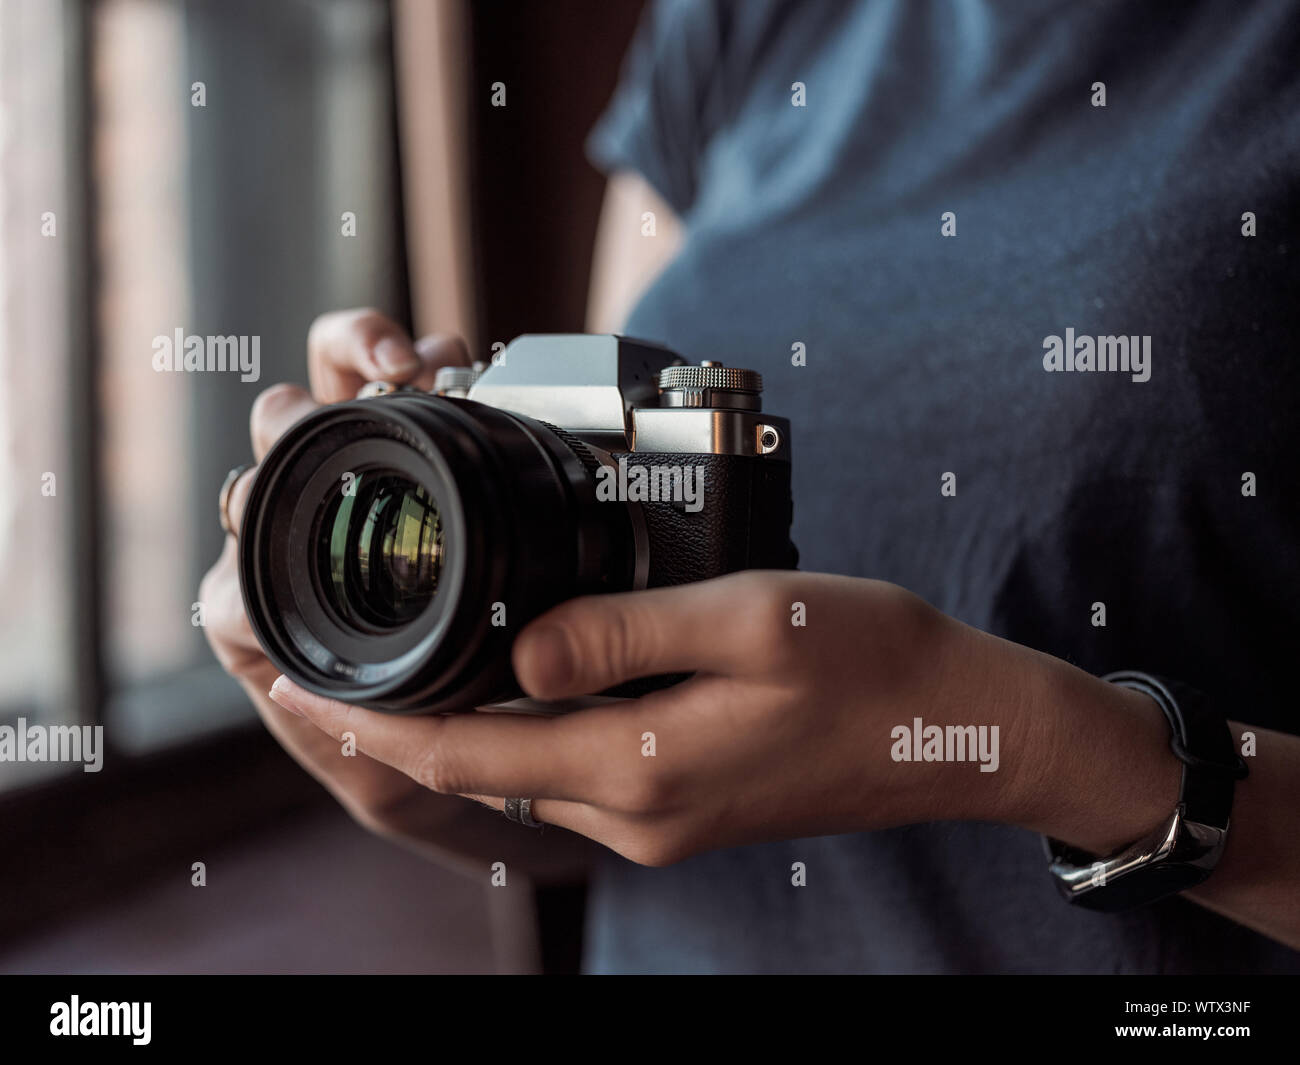 Moskau, Russland - 14. MÄRZ 2019: Fuji Kamera XT3, close-up der jungen Frau auf einem Studio Hintergrund Holding spiegellosen Kamera. Der Reporter ein pic Stockfoto